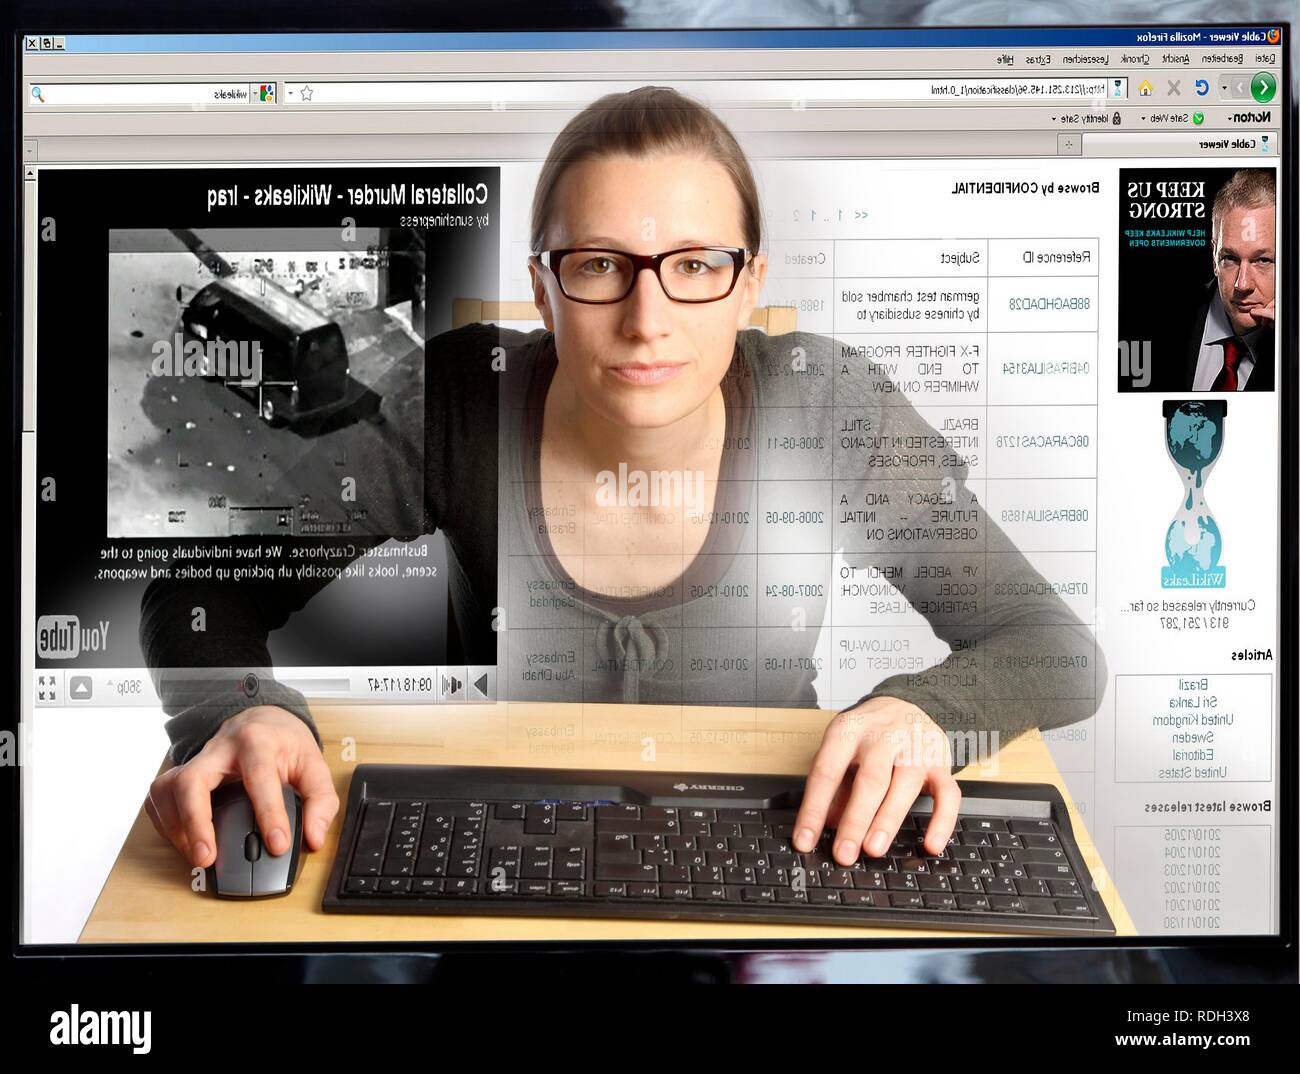 Giovane donna seduta a un computer per navigare in Internet, la visualizzazione di una pagina sul sito di WikiLeaks, vista dall'interno del computer Foto Stock